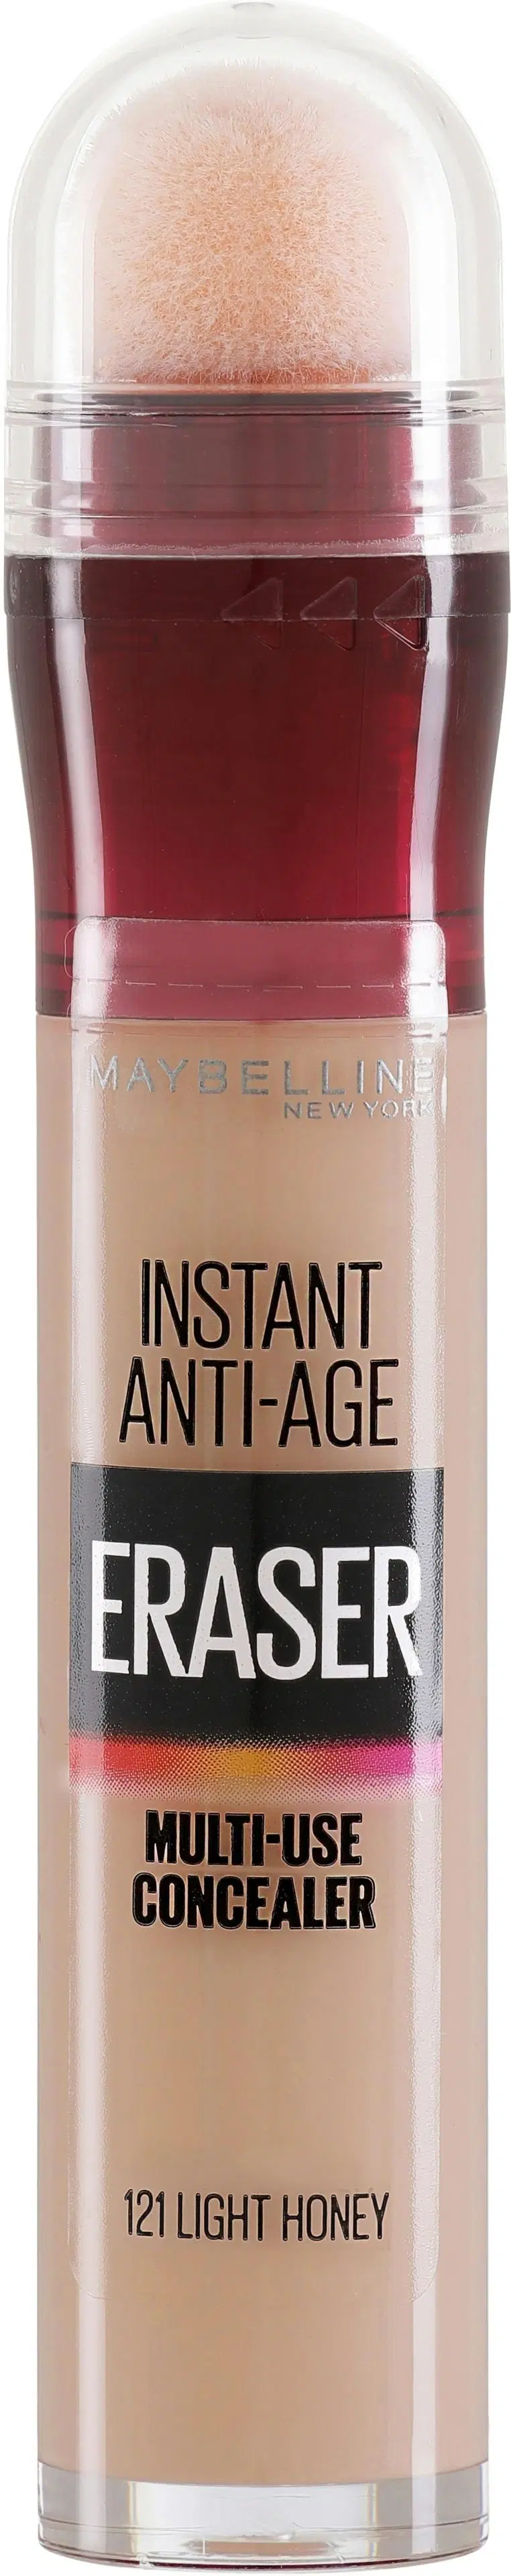 Maybelline New York Instant Anti Age Eraser 121 Light Honey peitevoide 6,8ml